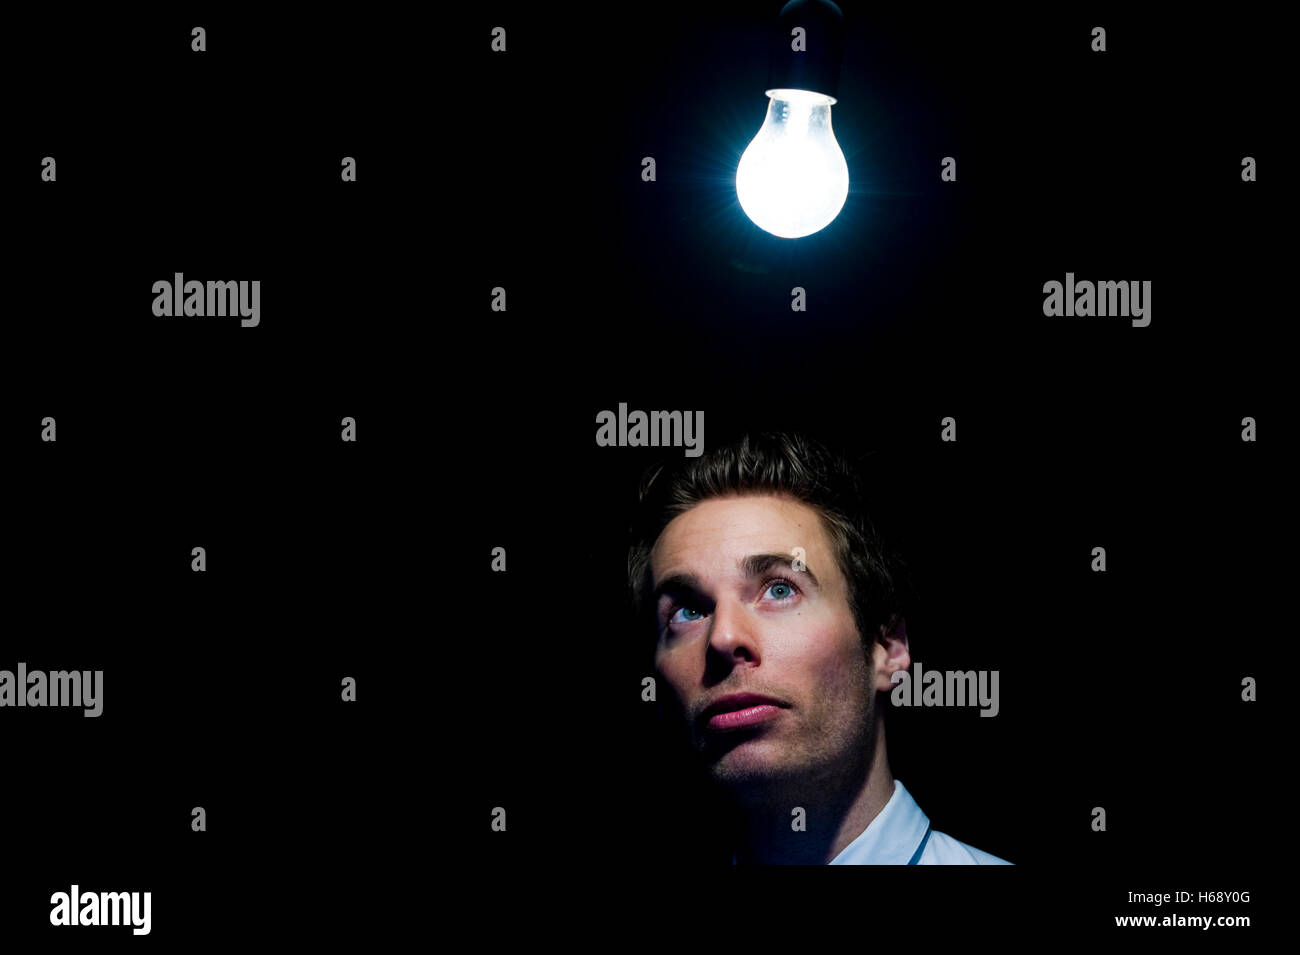 Mann, lampe, image symbolique pour l'illumination Banque D'Images